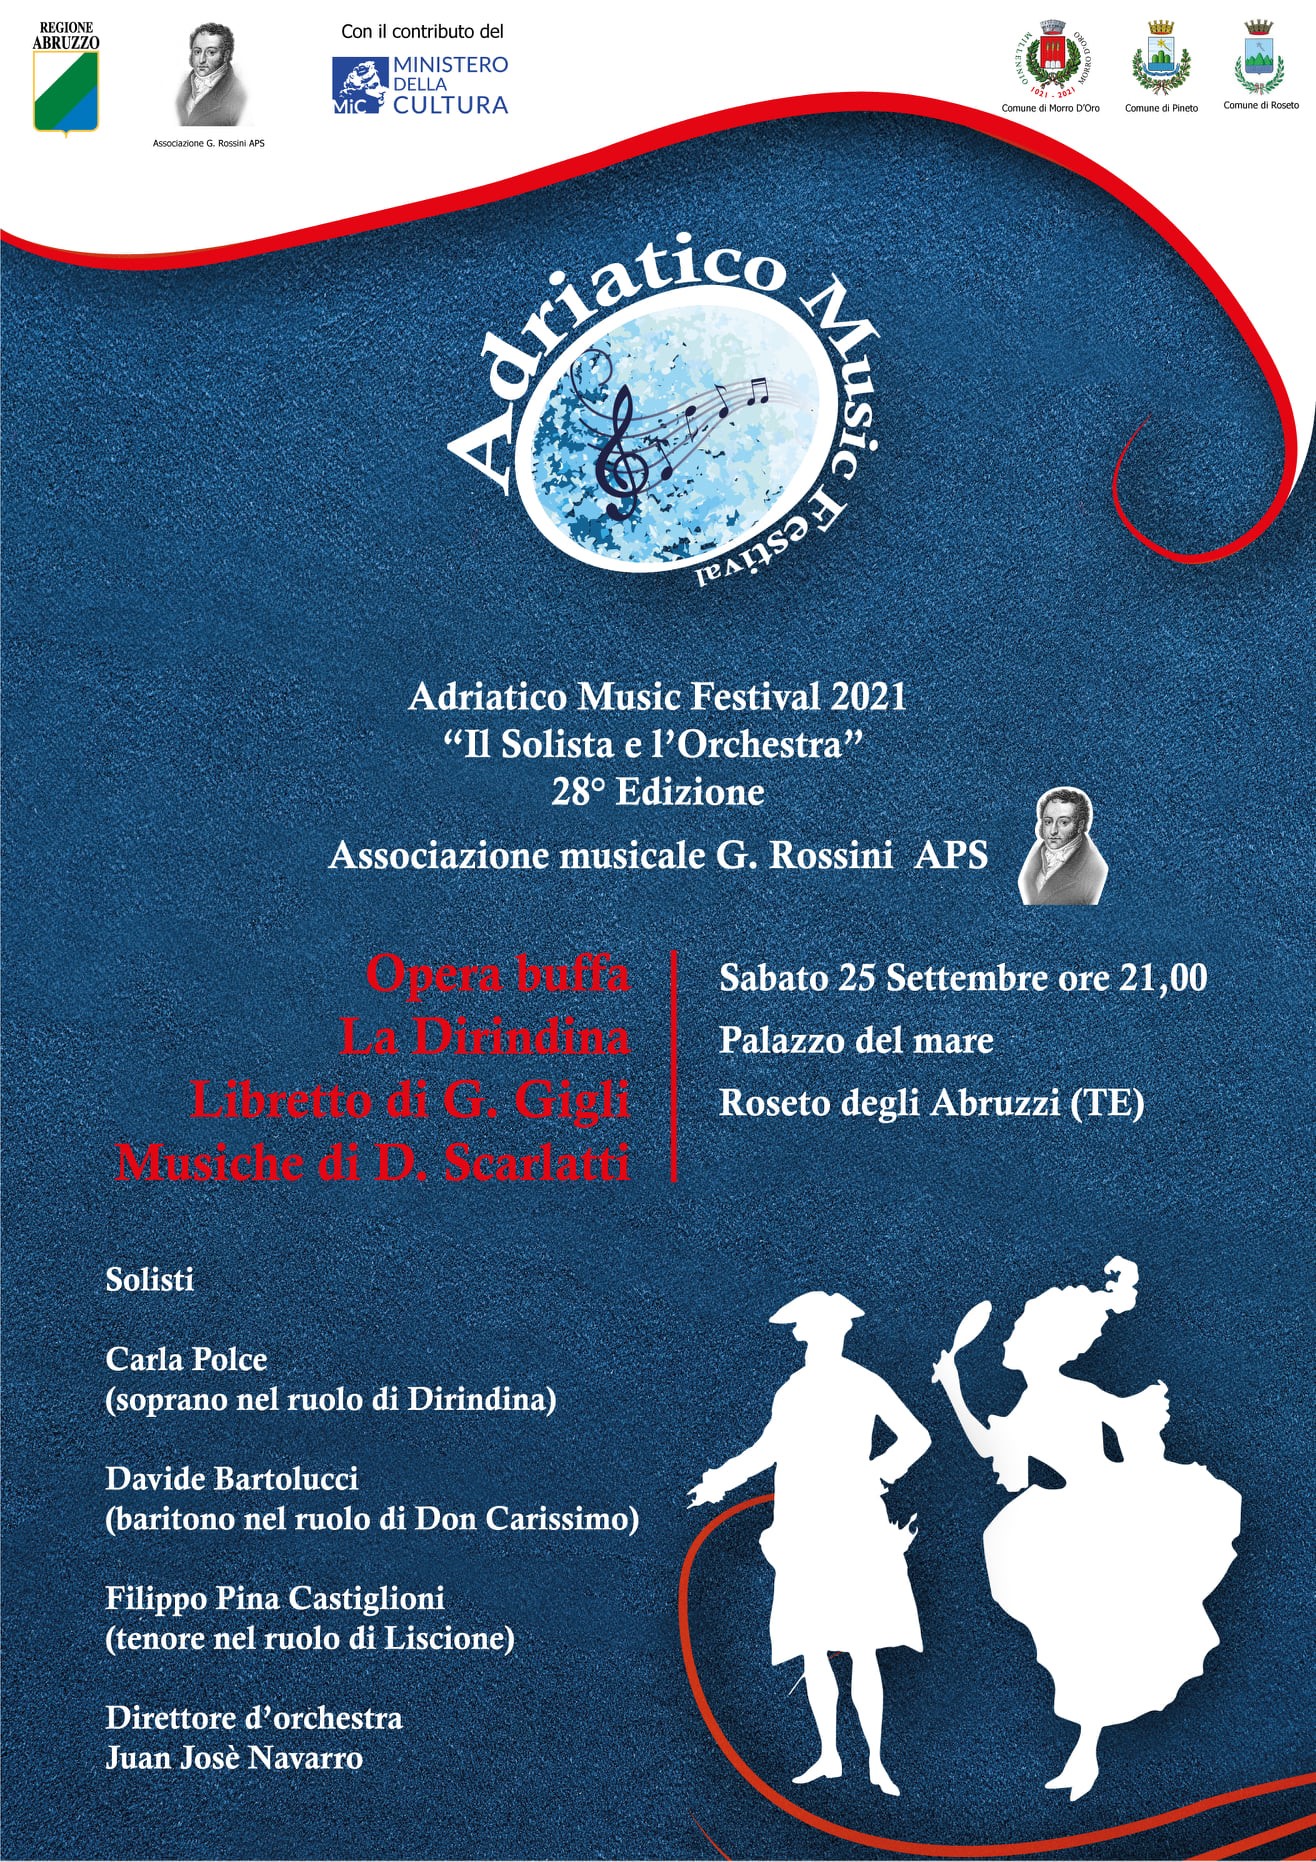 Adriatico Music Festival 2021: a Roseto di scena “La Dirindina”